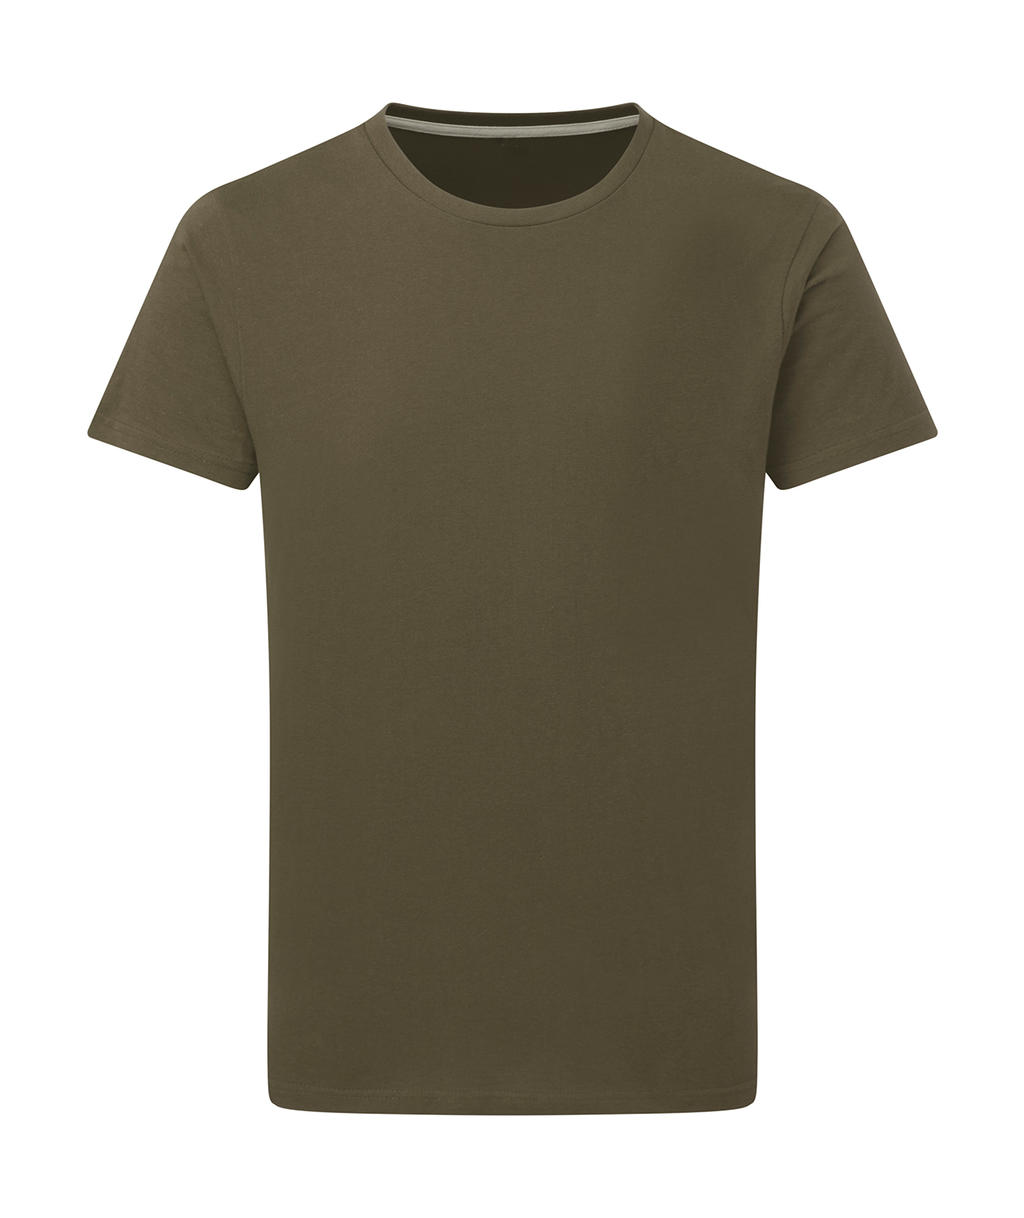 Dokonale potlačiteľné tričko bez štítku - military green